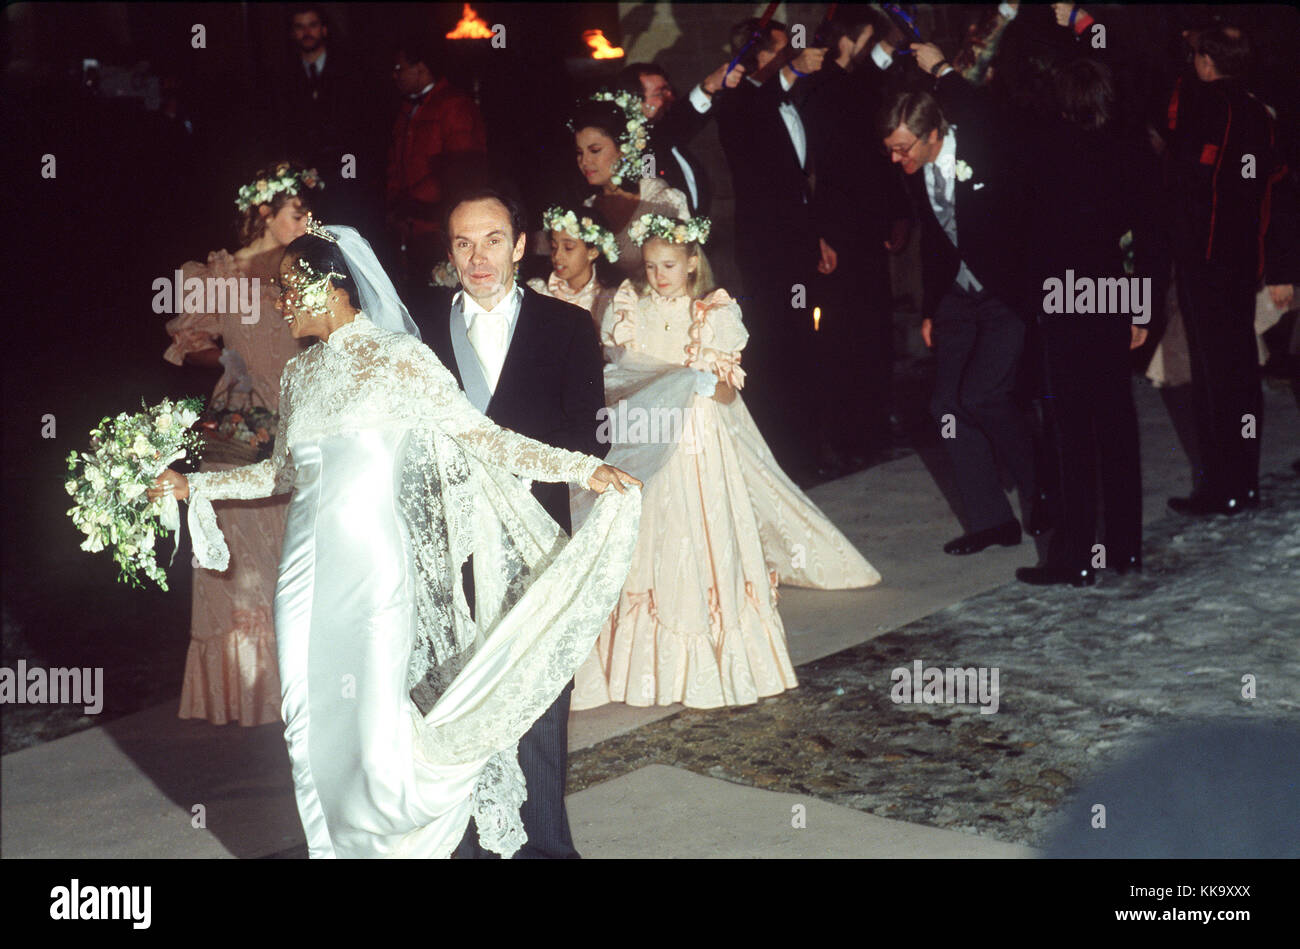 Diana Ross heiratet der norwegische Reeder Arne naess am 1. Februar 1986 in romainmotier (Schweiz). Diana Ross ihre Karriere als Mitglied der "supremes" und arbeitet als solo Künstler seit den 70er Jahren gestartet. Sie war Geboren am 26. März 1944 in Detroit (USA). | Verwendung weltweit Stockfoto